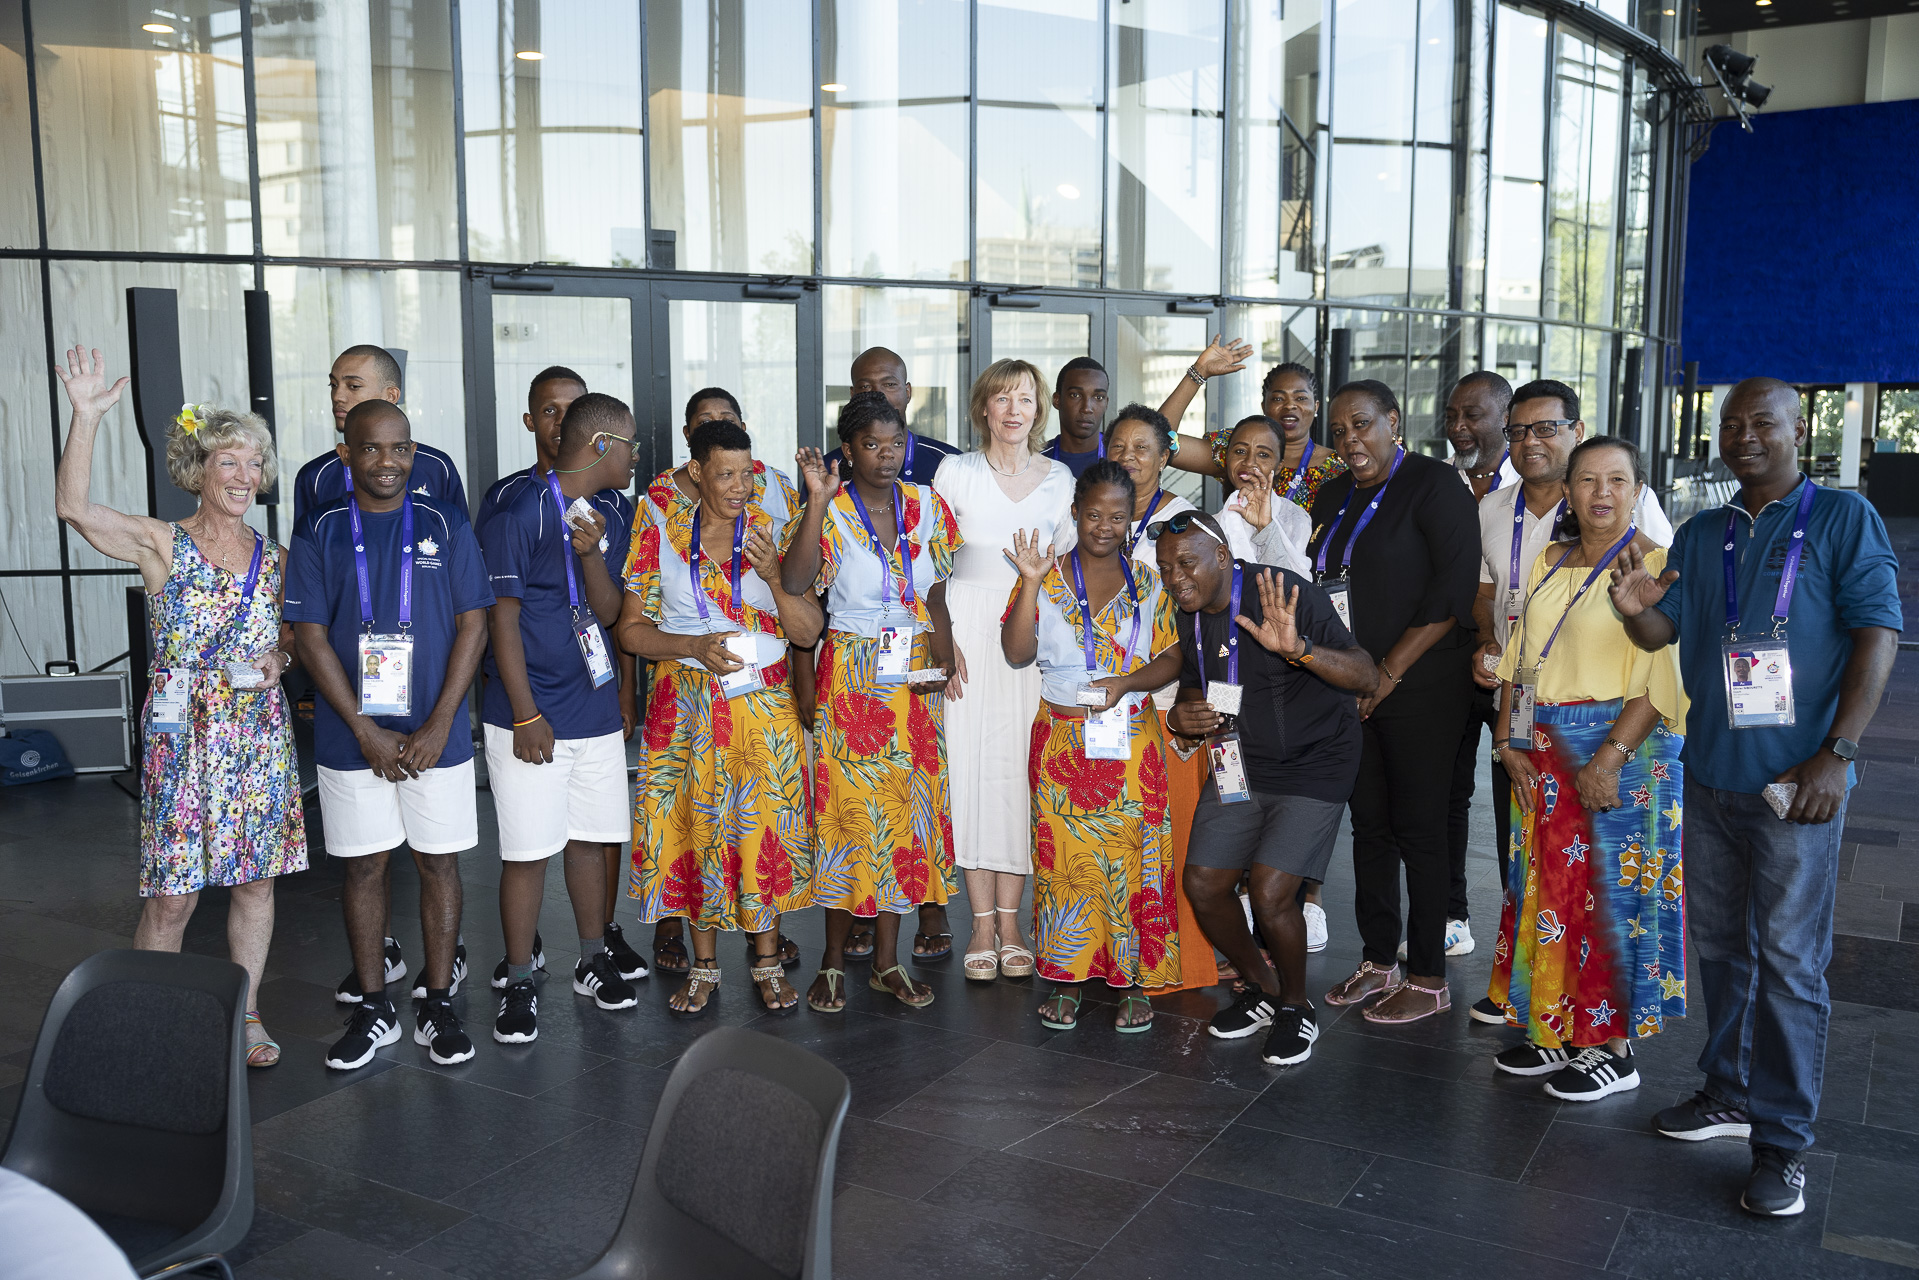 Sportlerinnen und Sportler von den Seychellen sind zu Gast in Gelsenkirchen. Die Athleten nehmen am größte inklusiven Sportfest der Welt teil.